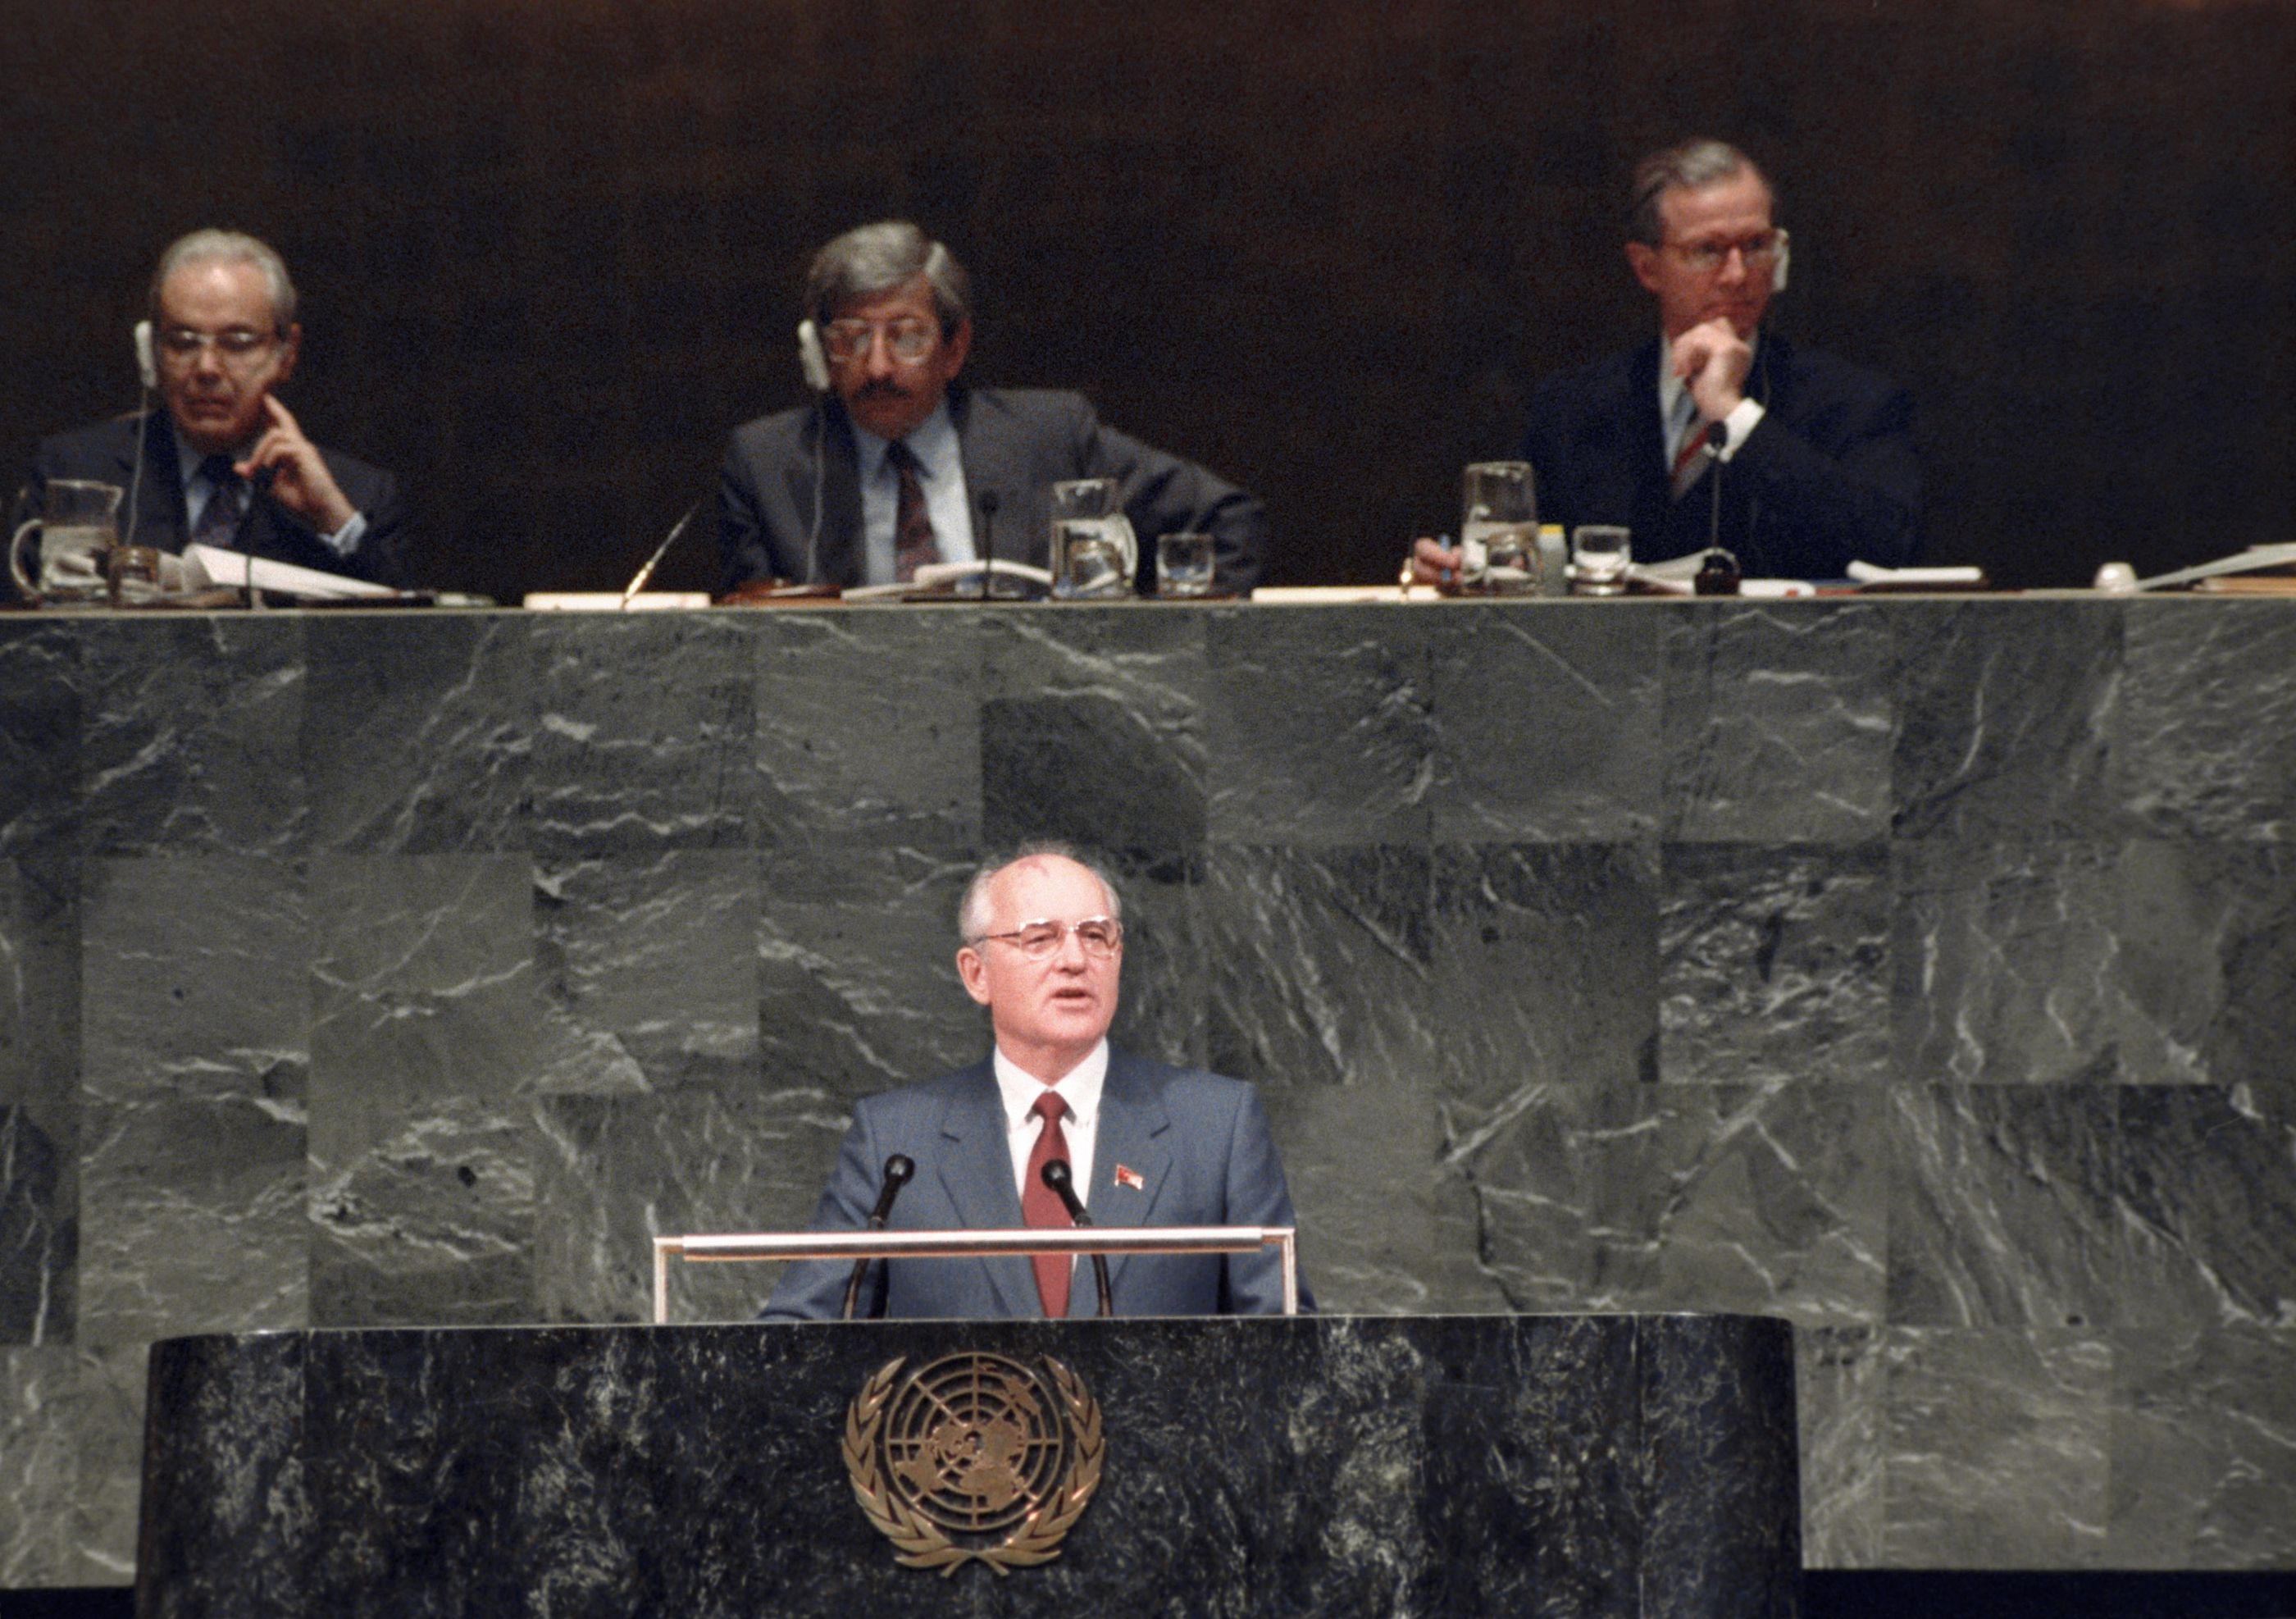 Выступление М.С. Горбачева на 43-й сессии Генеральной Ассамблеи ООН. 7 декабря 1988 г.